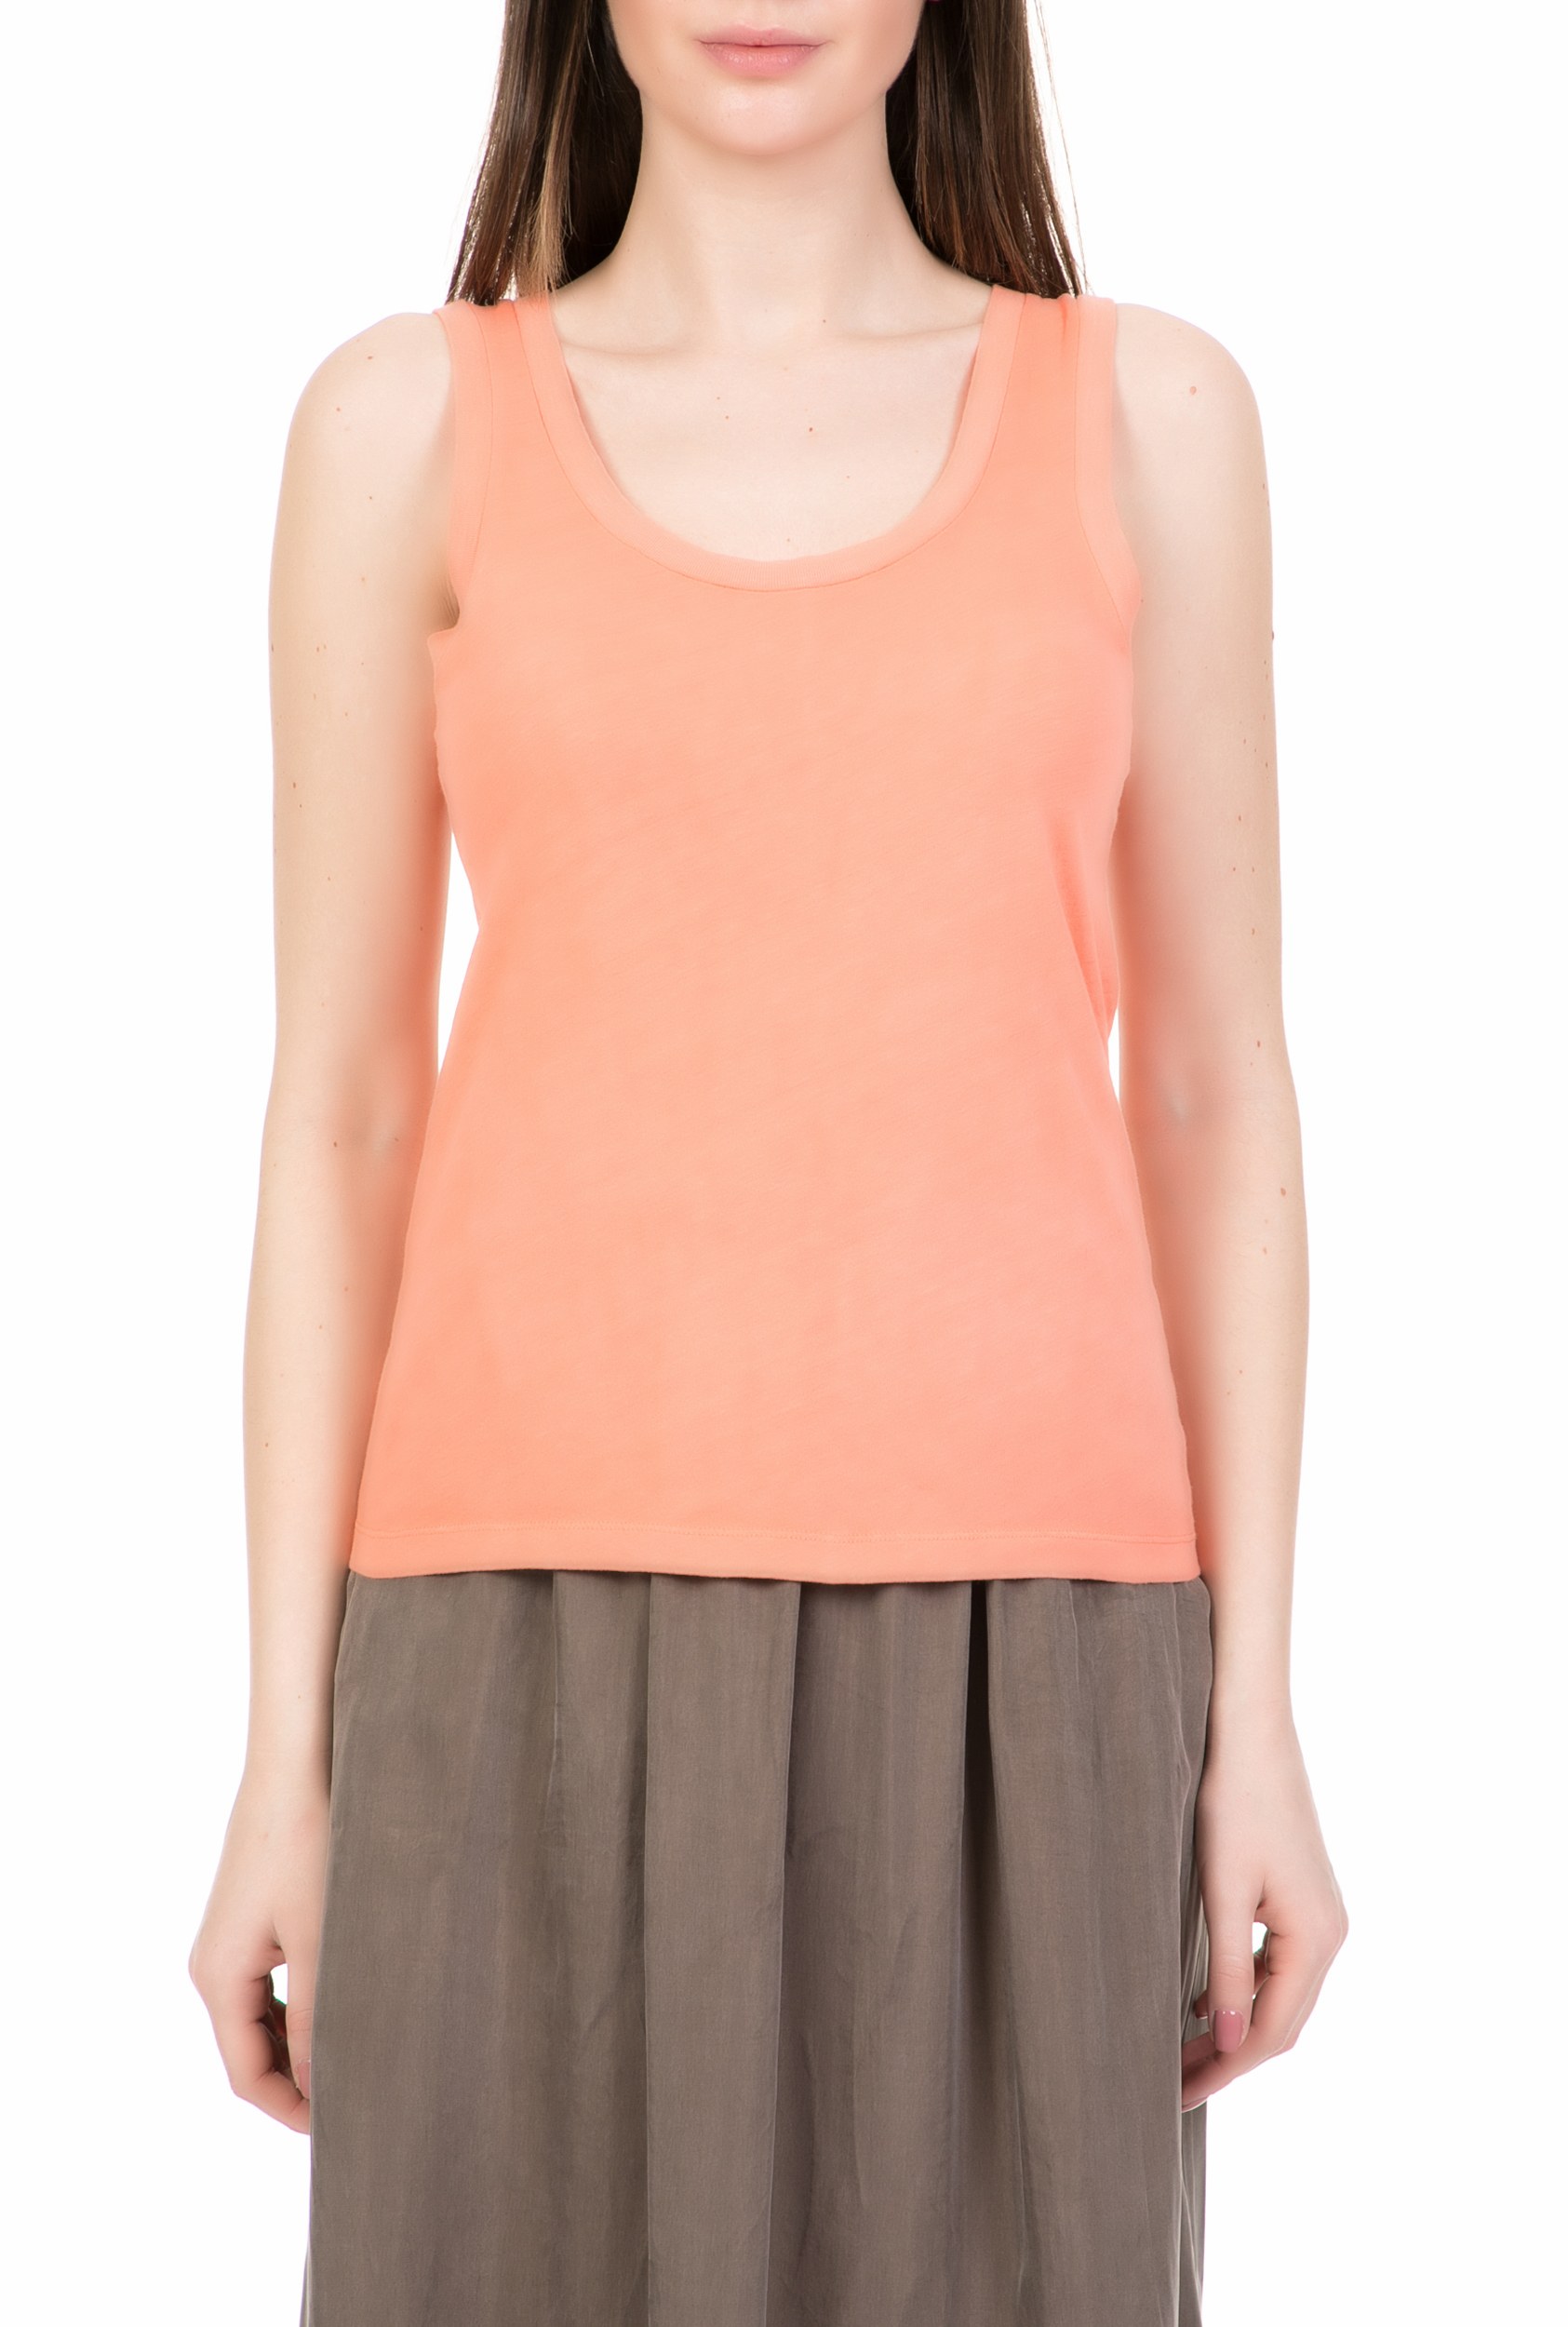 Γυναικεία/Ρούχα/Μπλούζες/Αμάνικες AMERICAN VINTAGE - Γυναικεία αμάνικη μπλούζα AMERICAN VINTAGE πορτοκαλί